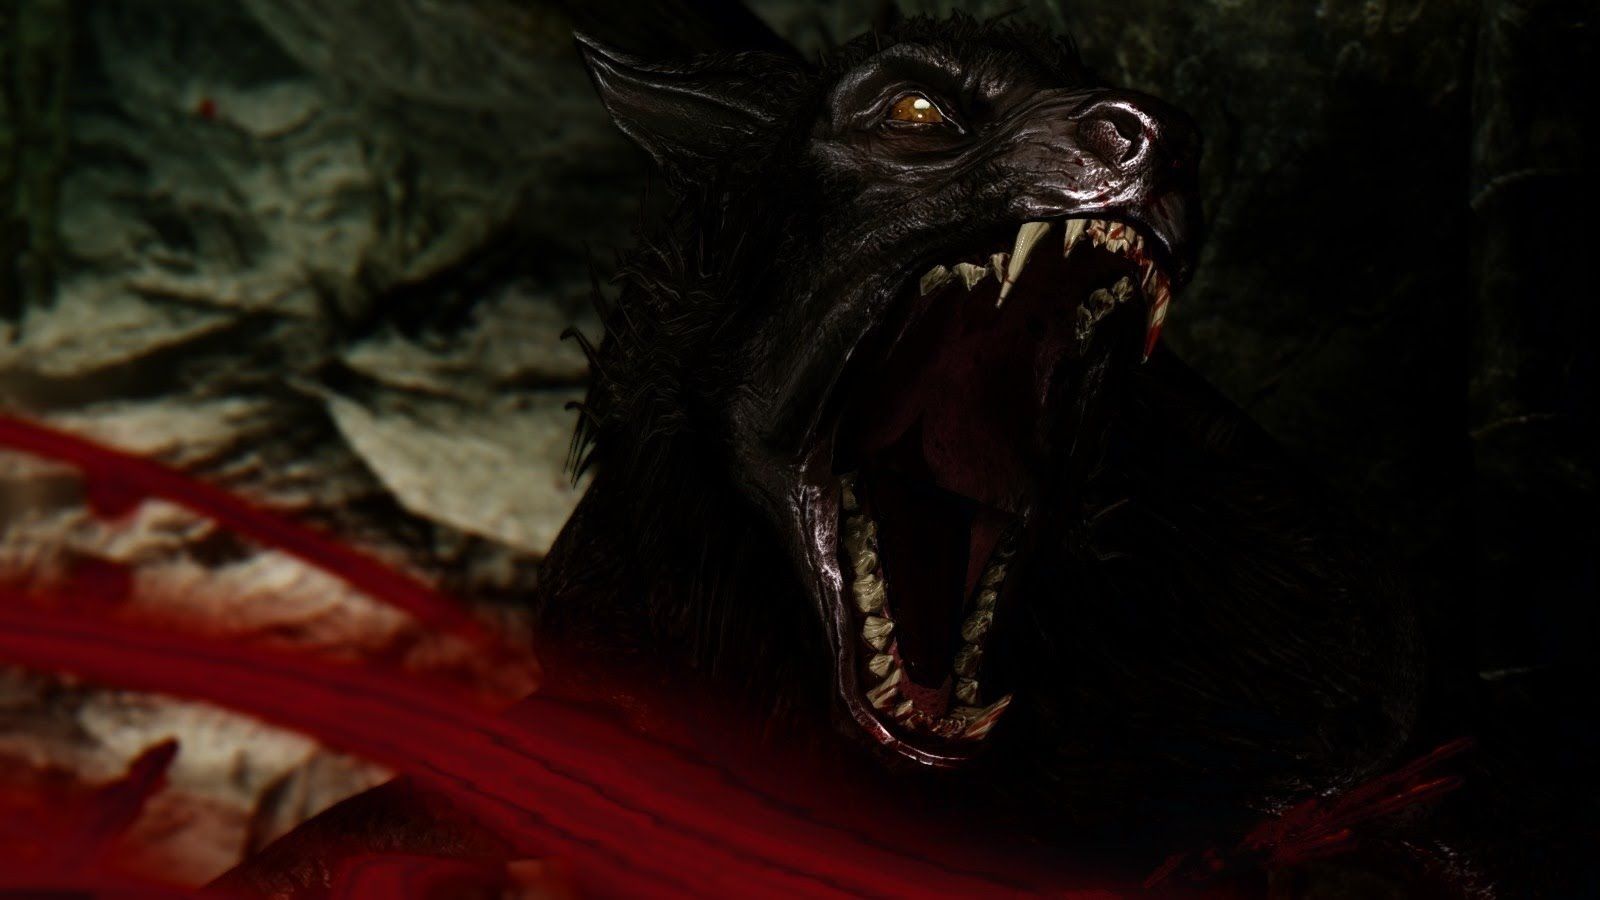 Werewolf Vargr from Skyrim screaming